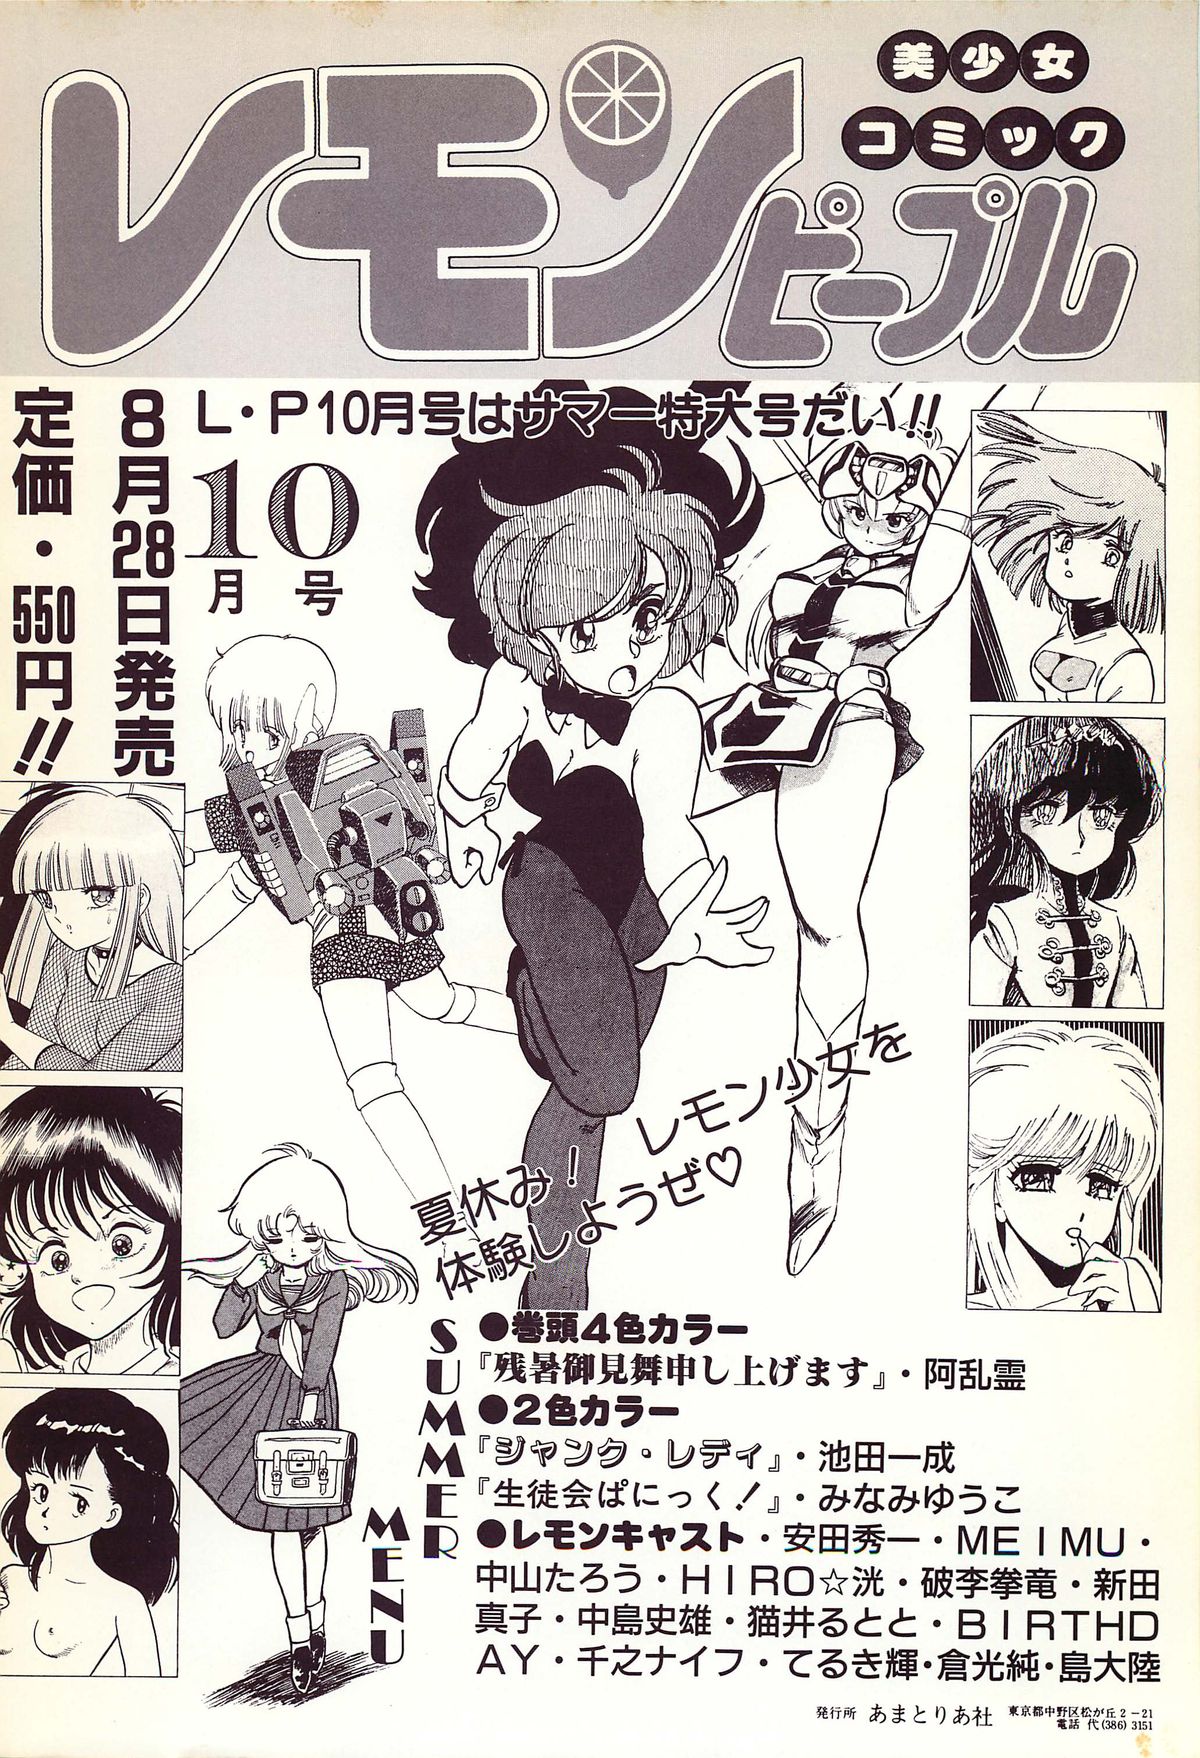 レモンピープル 1986年9月増刊号 Vol.61 オールカラー